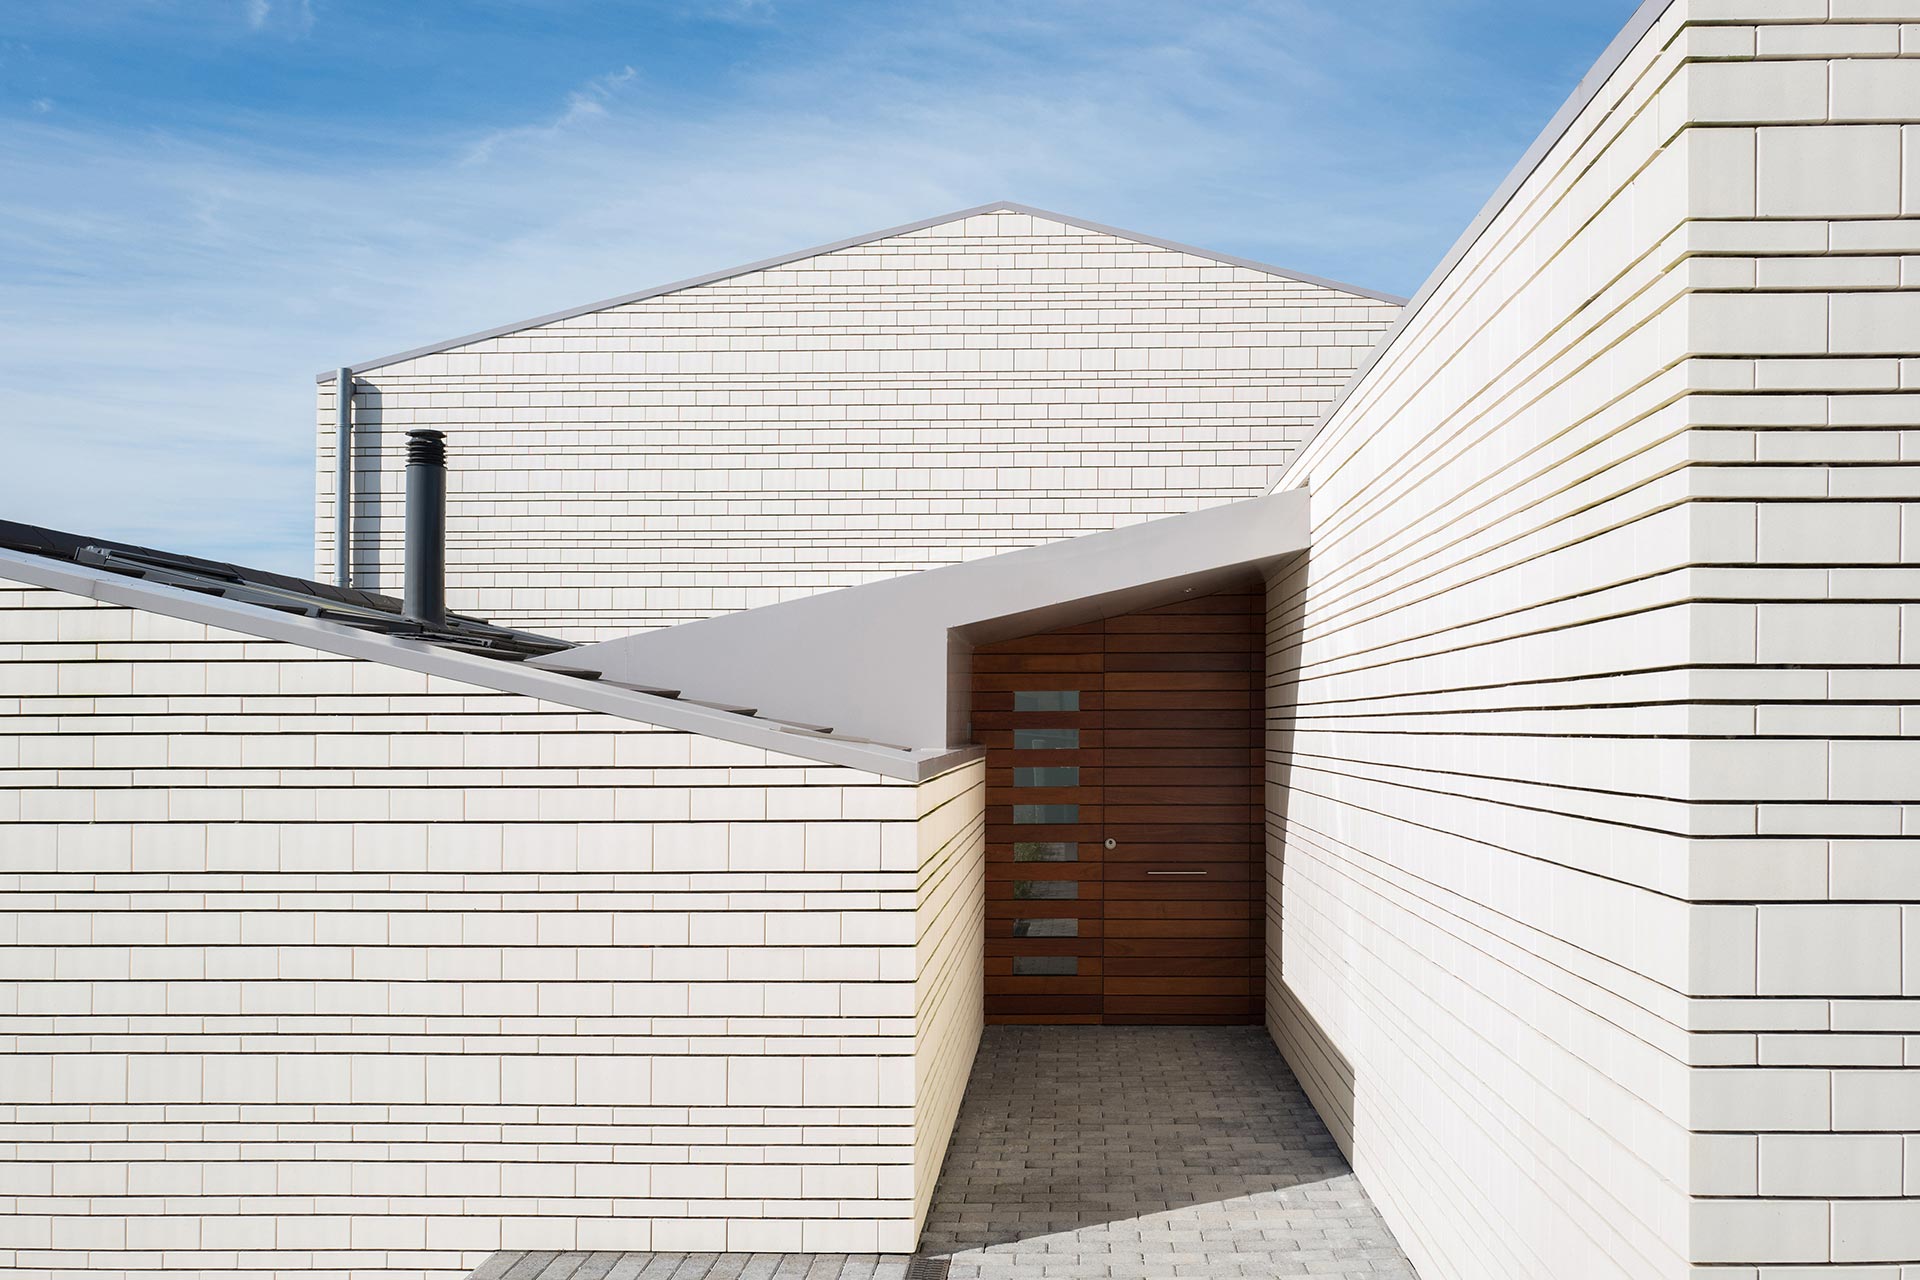 Fachada de ladrillo blanco en casa moderna con cubierta a dos aguas diseñada por Moah Arquitectos en Villaverde, Cantabria